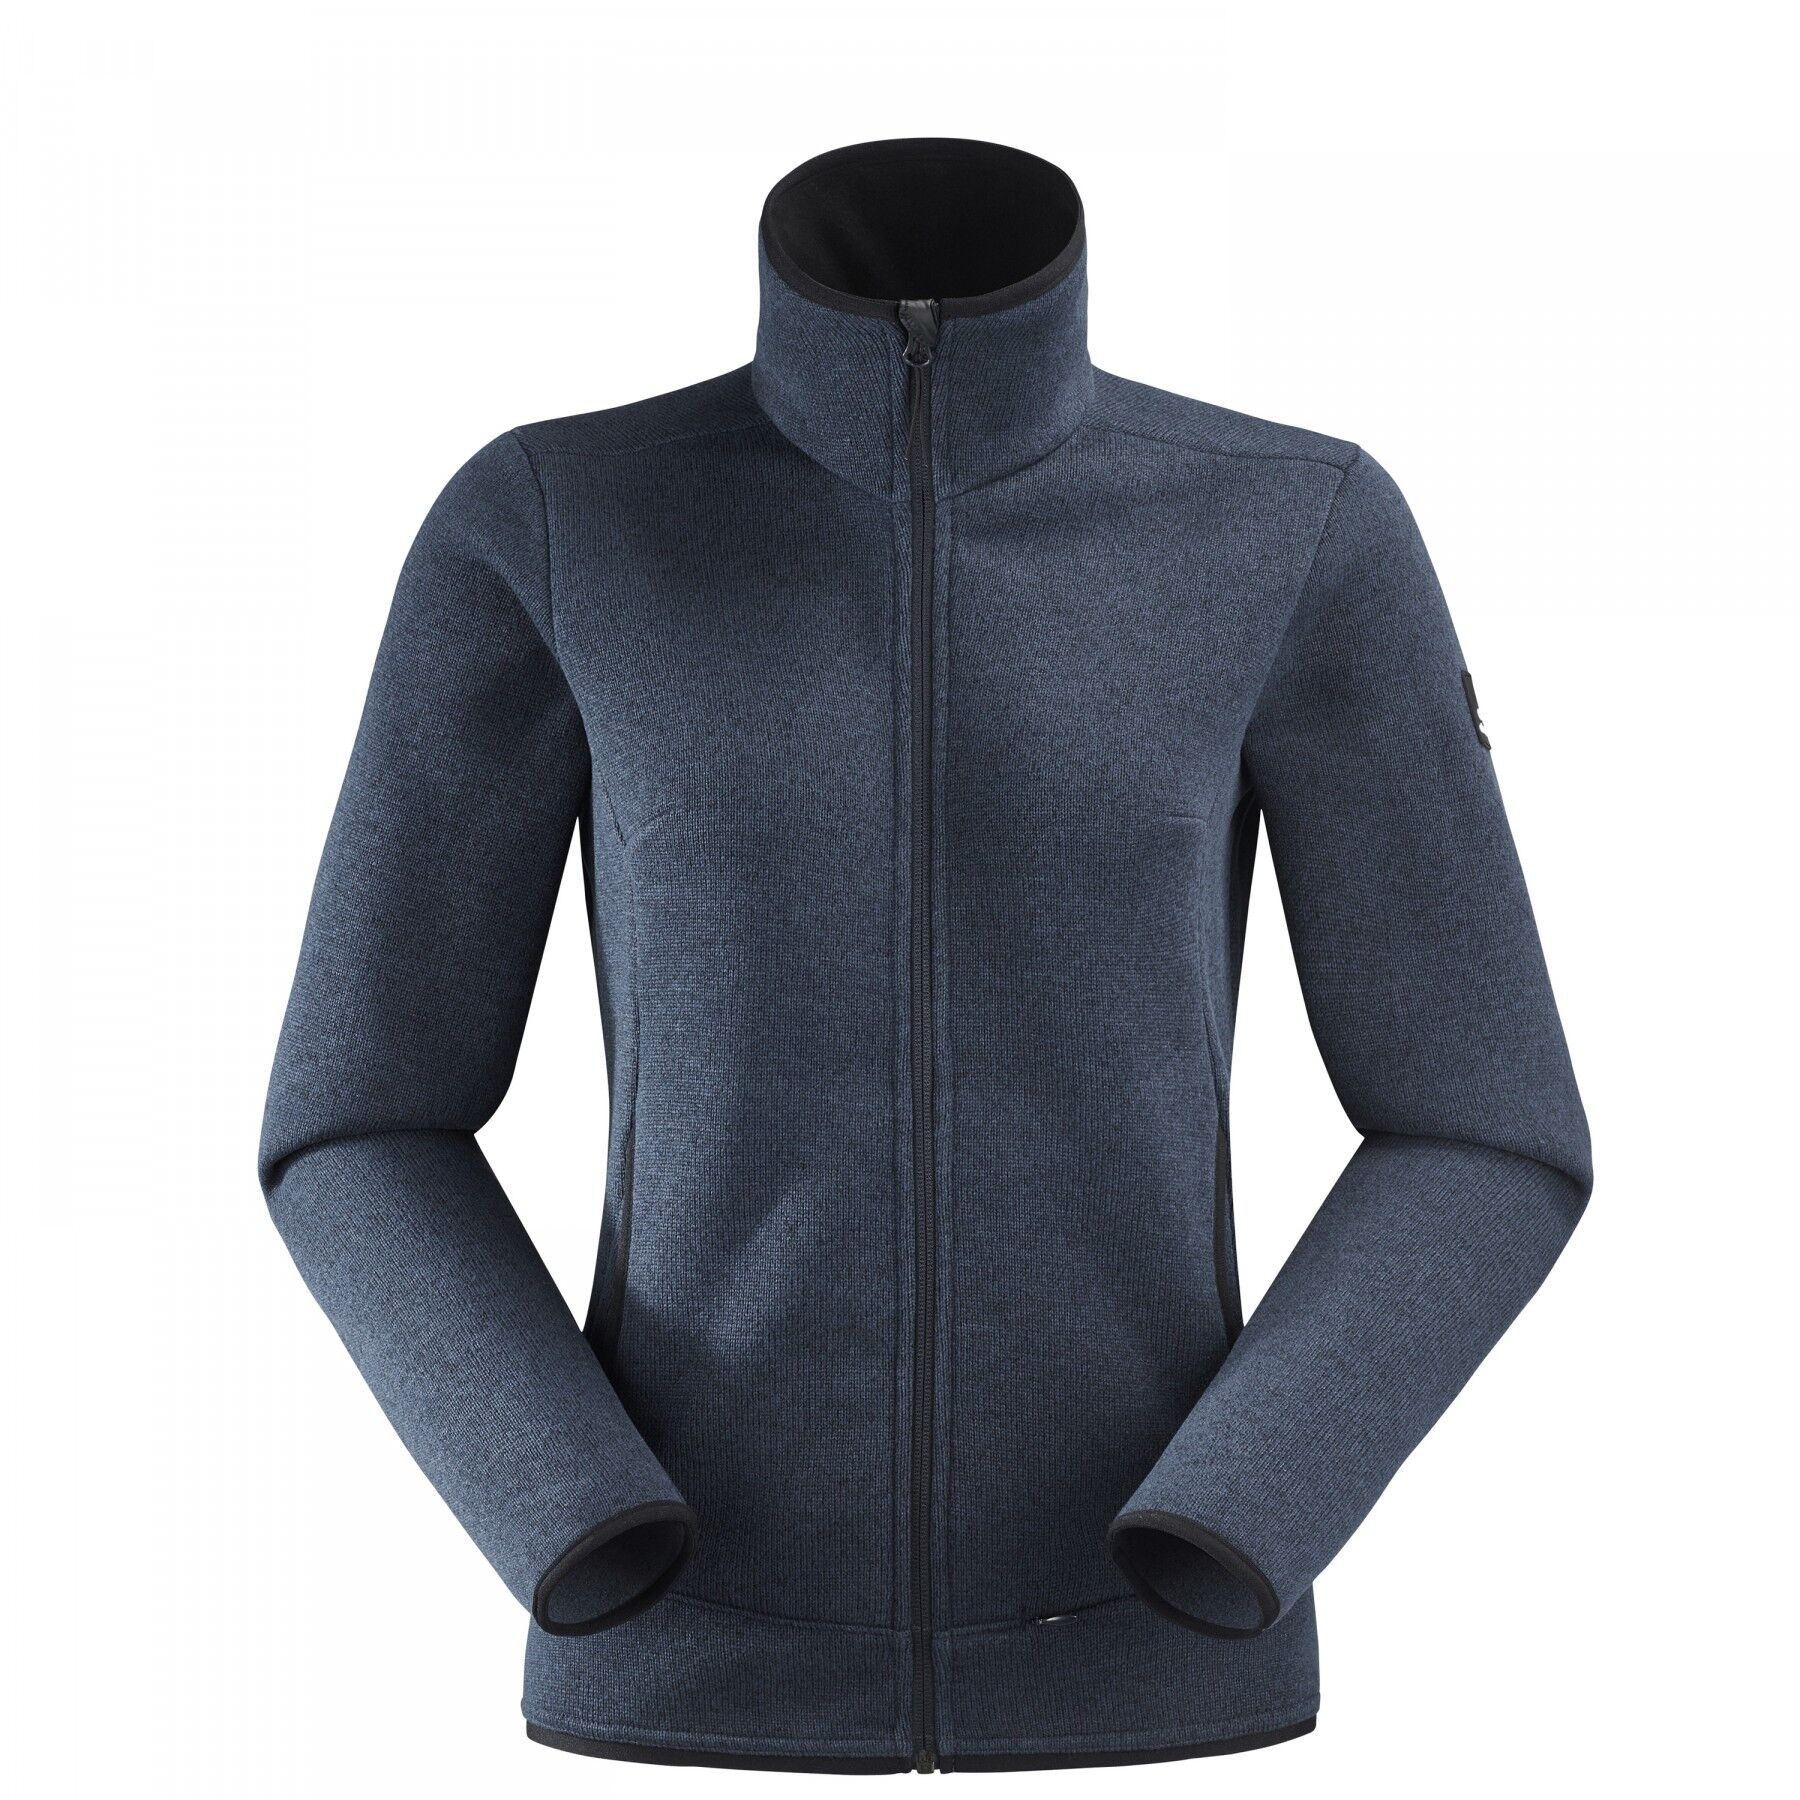 Eider Mission Jkt 2.0 W - Fleece jacket - Women's